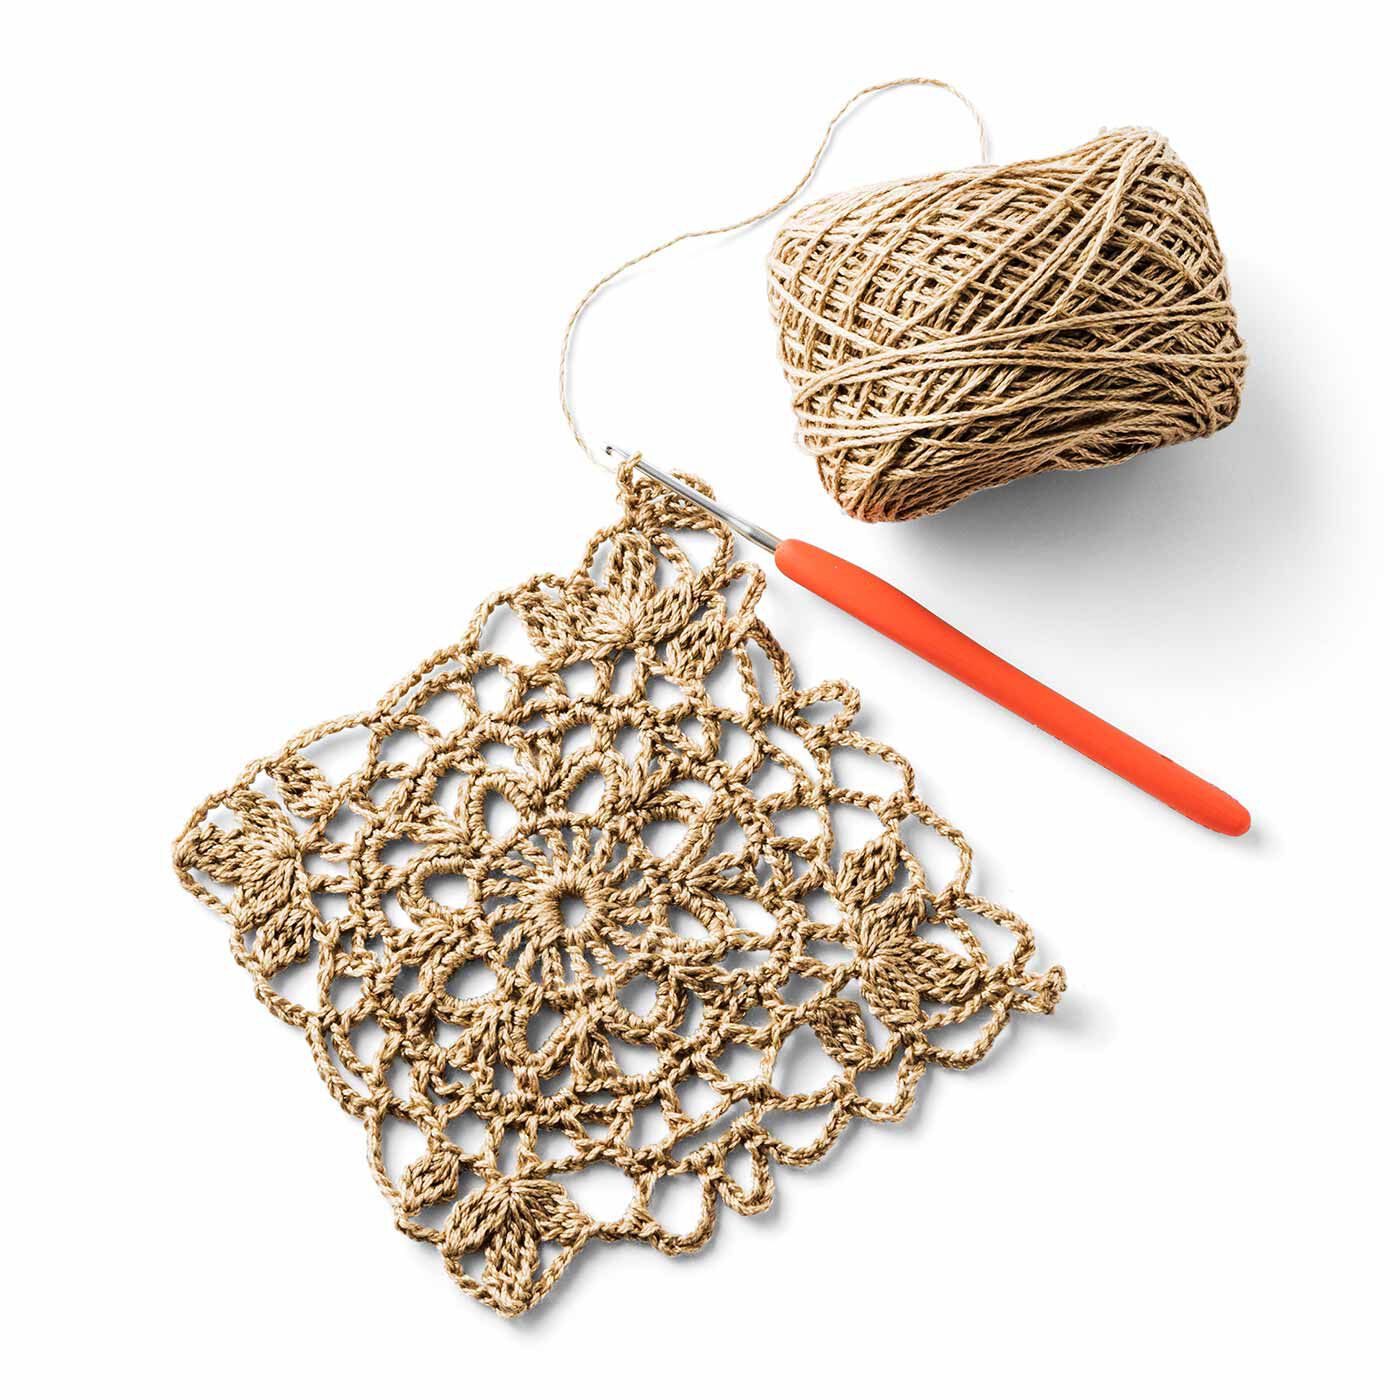 Couturier|リサイクルポリエステルの糸で編む 日常使いのかぎ針マルシェバッグの会